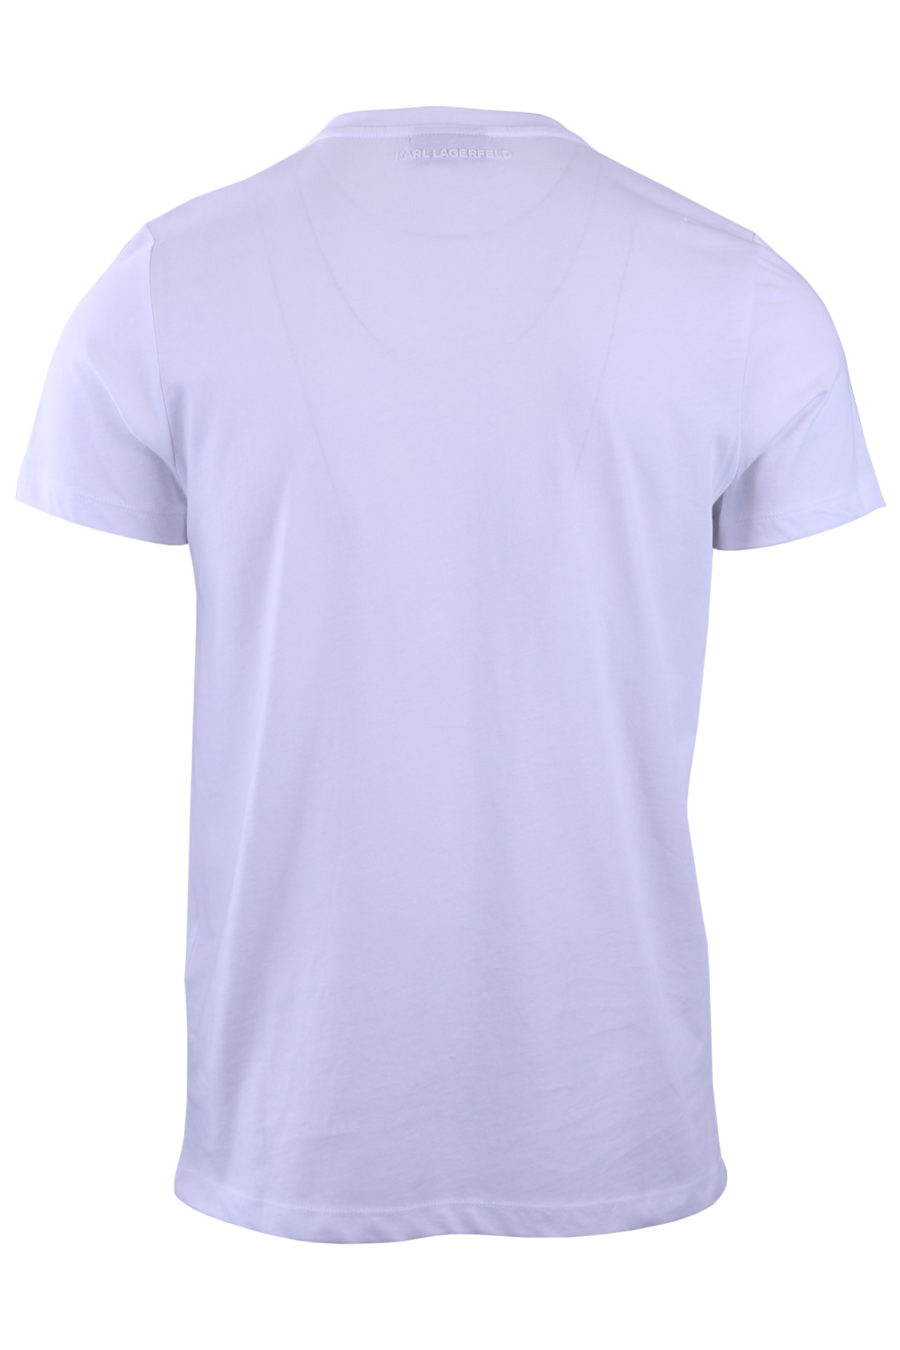 Camiseta blanca con el perfil de Karl plateado - 7c5495990f27502af52510b72a52aff9cffc4c41